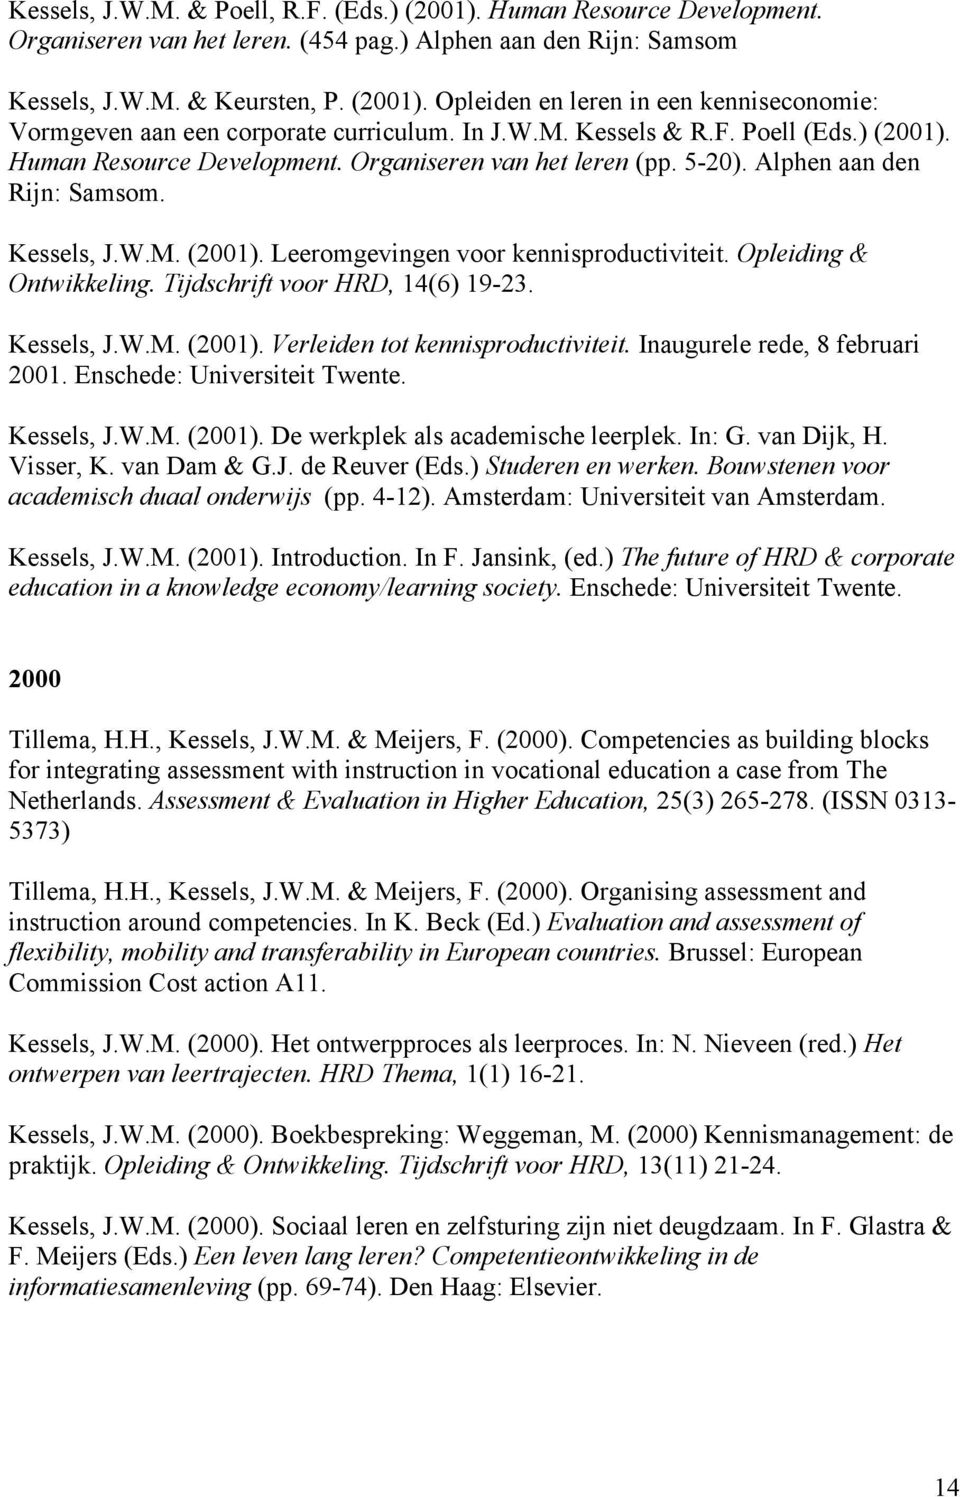 Opleiding & Ontwikkeling. Tijdschrift voor HRD, 14(6) 19-23. Kessels, J.W.M. (2001). Verleiden tot kennisproductiviteit. Inaugurele rede, 8 februari 2001. Enschede: Universiteit Twente. Kessels, J.W.M. (2001). De werkplek als academische leerplek.